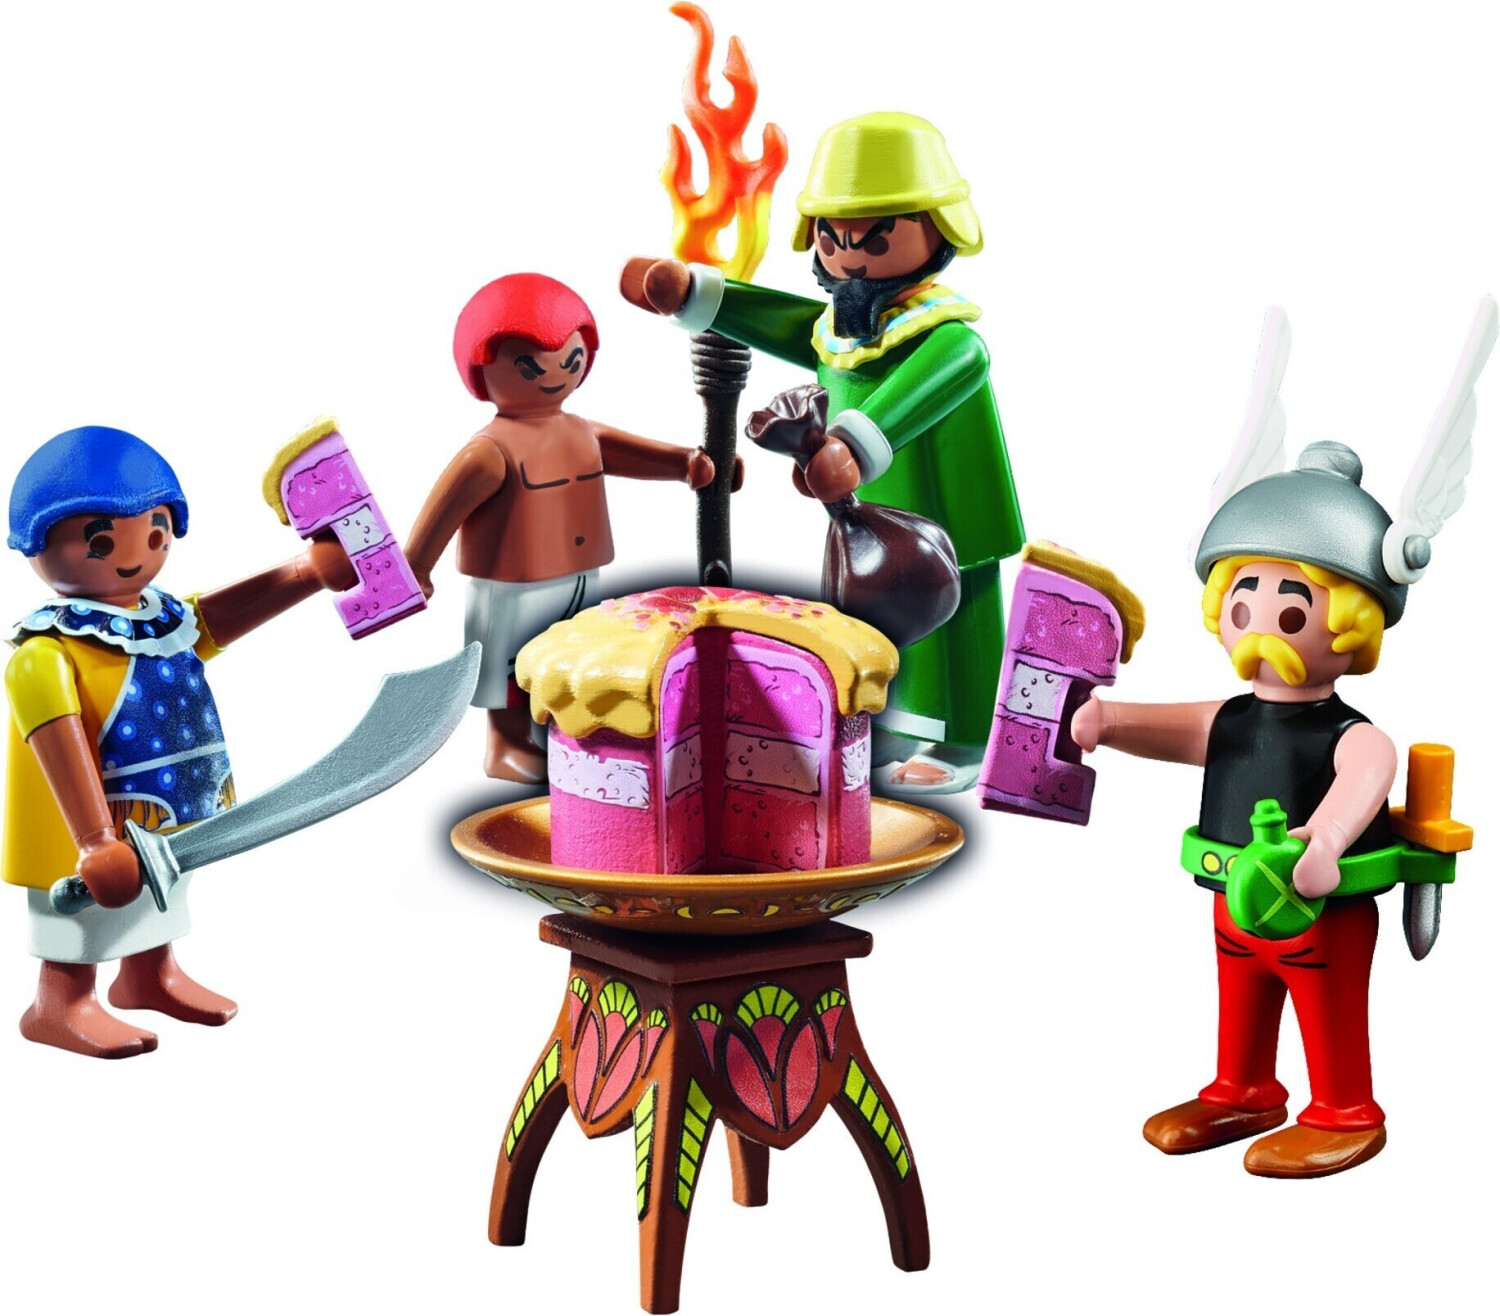 Playmobil colección Astérix y Obélix, la Cabaña de Ordenalfabetix (71266)